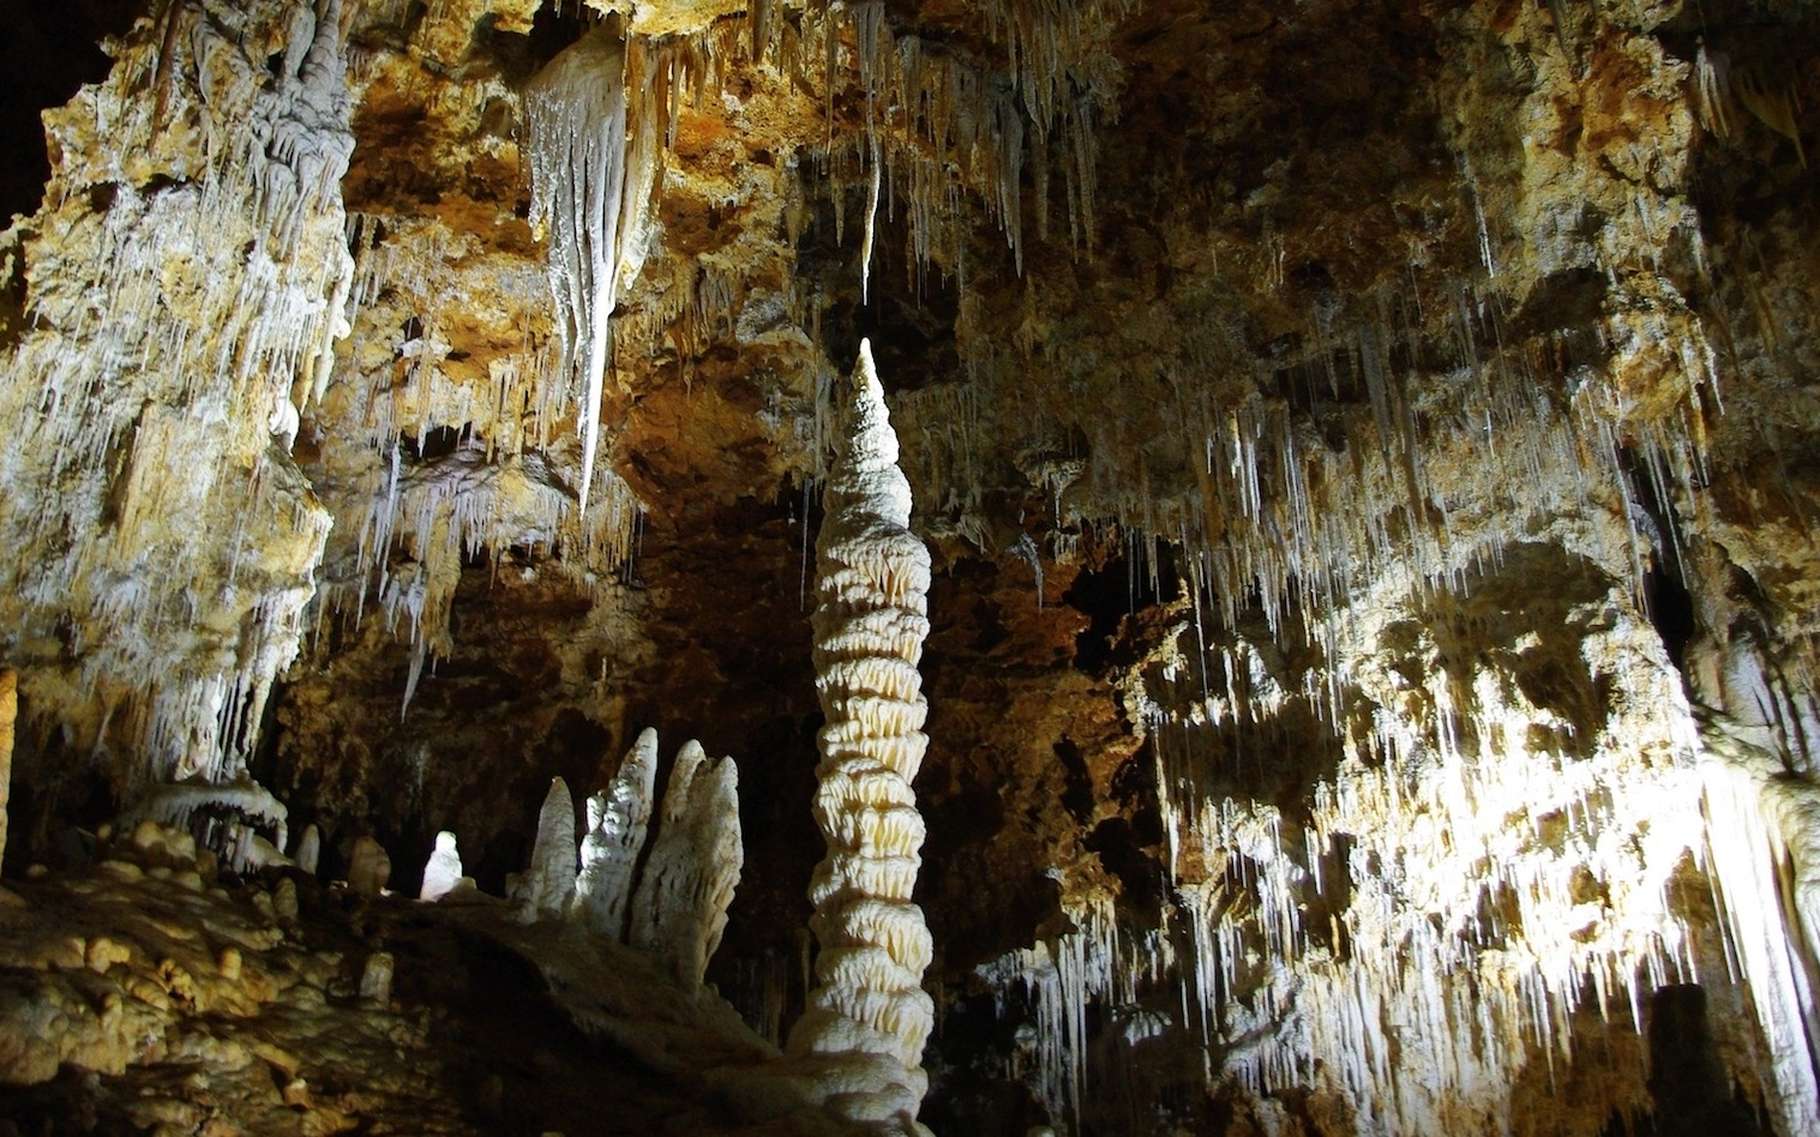 Une stalagmite est une formation calcaire qui apparaît sur le sol d’une grotte. © danydory, Pixabay, CC0 Creative Commons